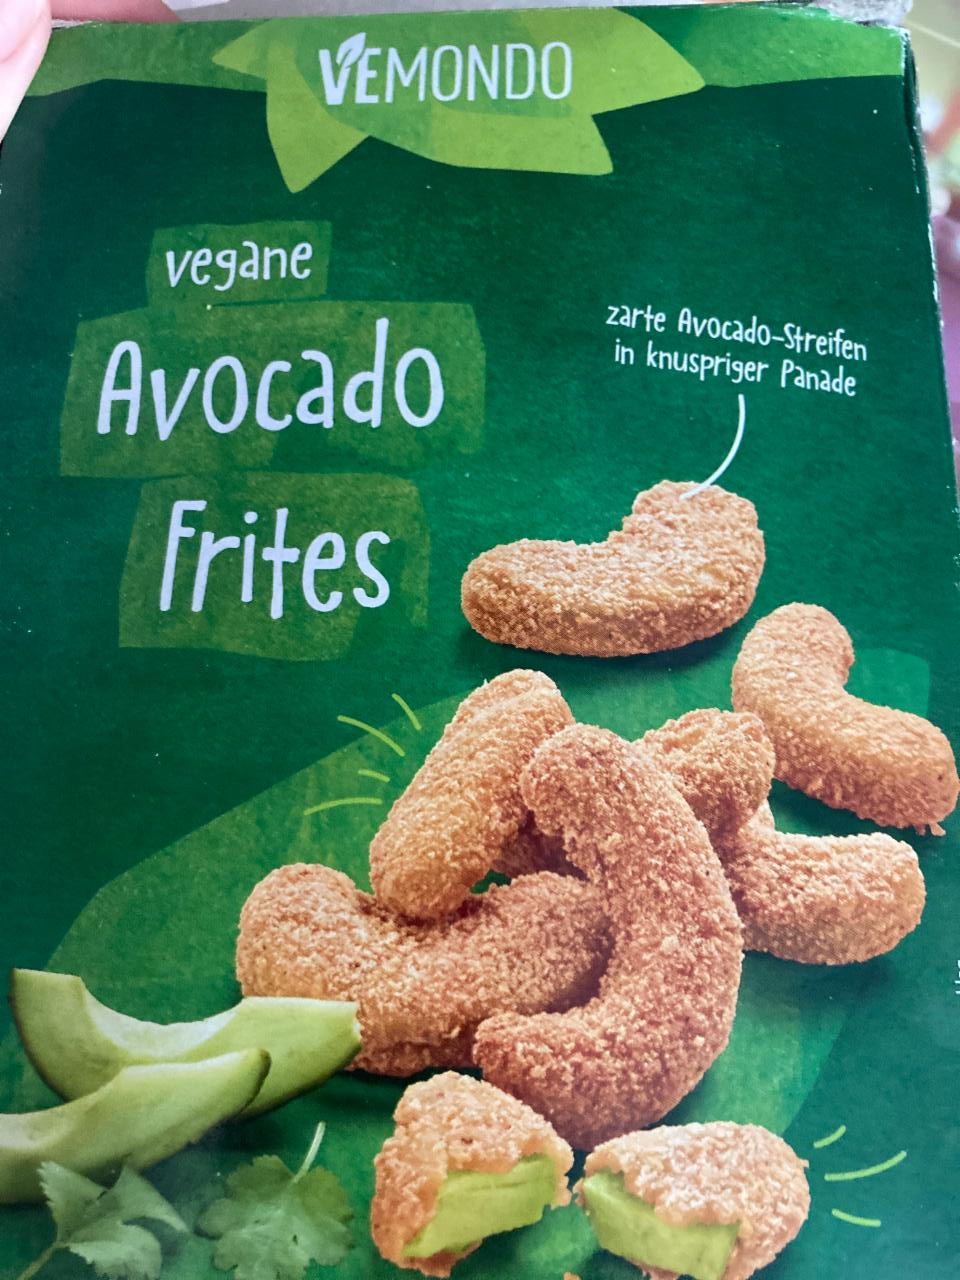 Vegane Avocado Frites hodnoty - nutriční kalorie, kJ a Vemondo